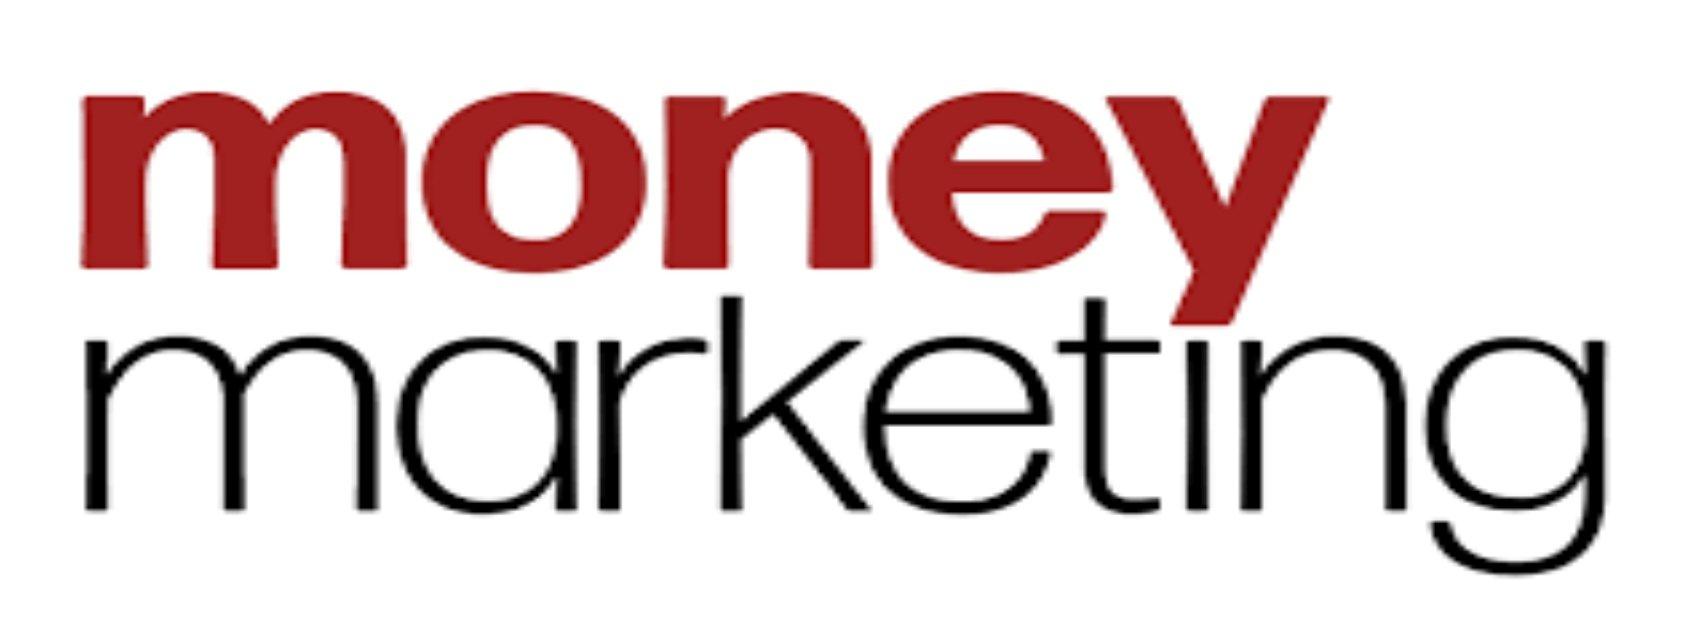 moneymarketing logo 2